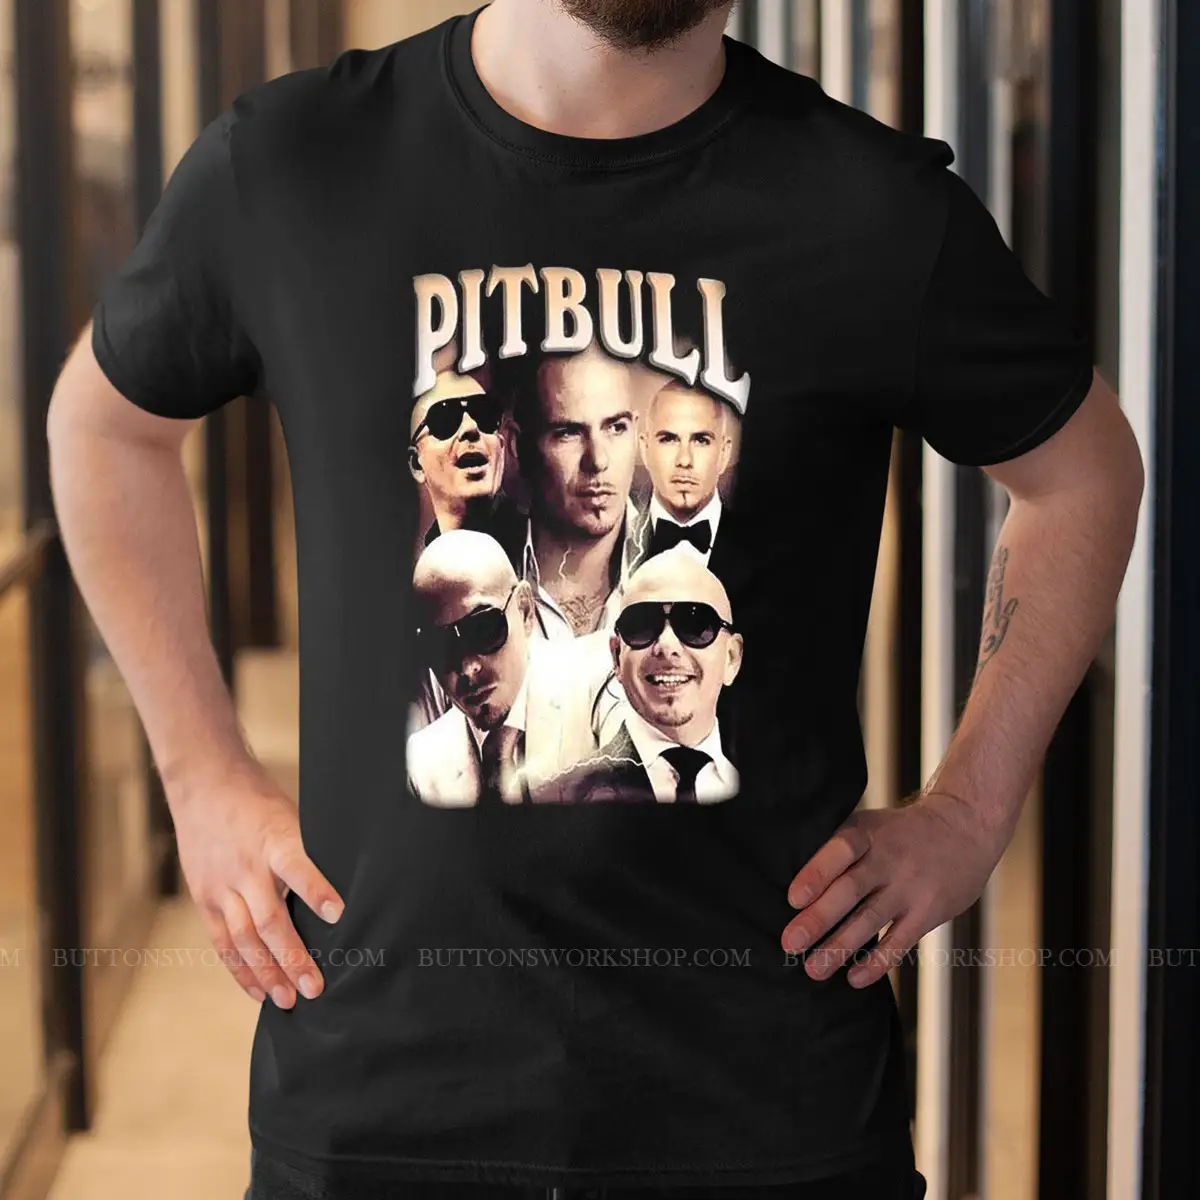 Pitbull T Shirt Designs Unisex Tshirt